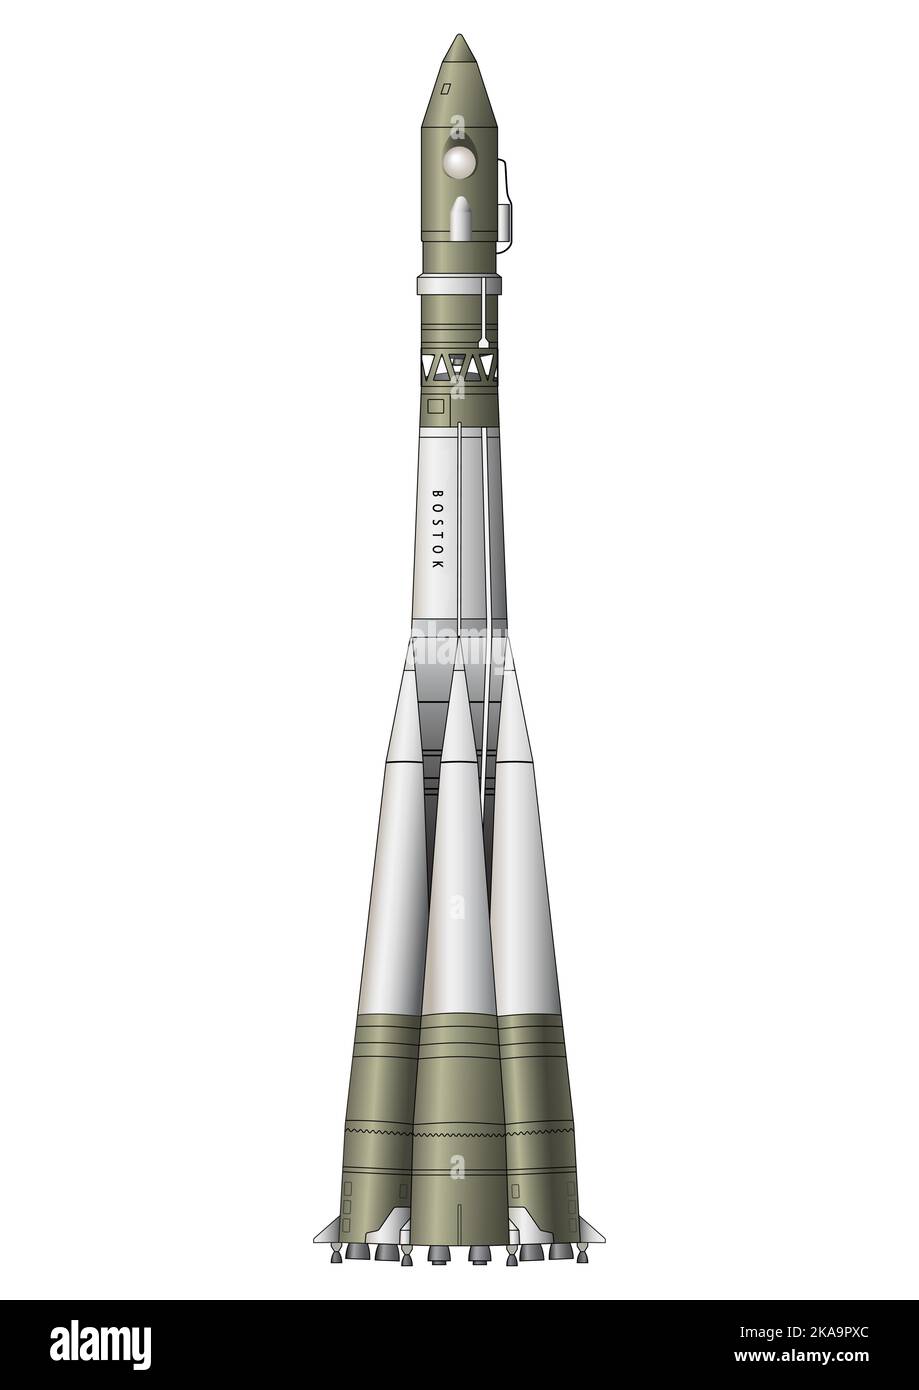 Vostok 1 - die erste Rakete, die den Menschen ins All transportierte Stock Vektor